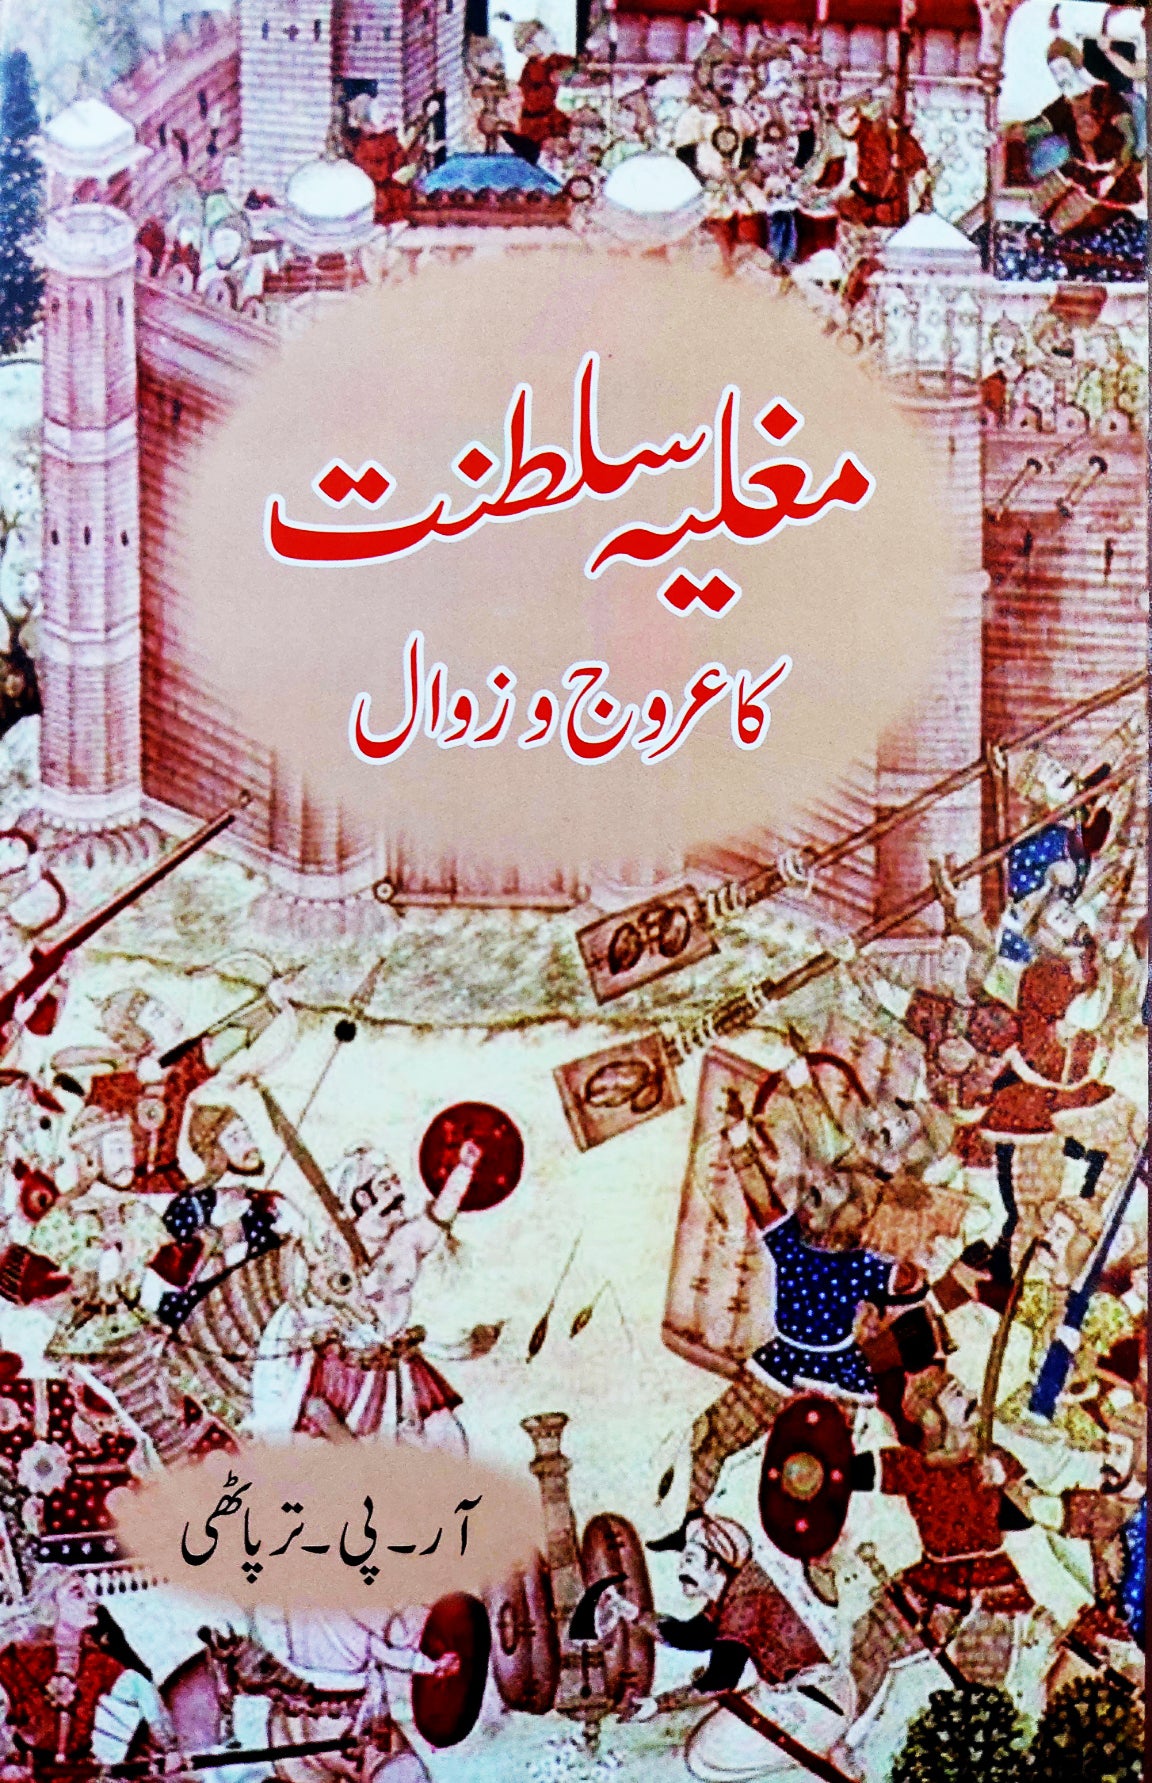 مغلیہ سلطنت کا عروج و زوال | Mughliya Saltanat Aroj O Zawal Fiction House